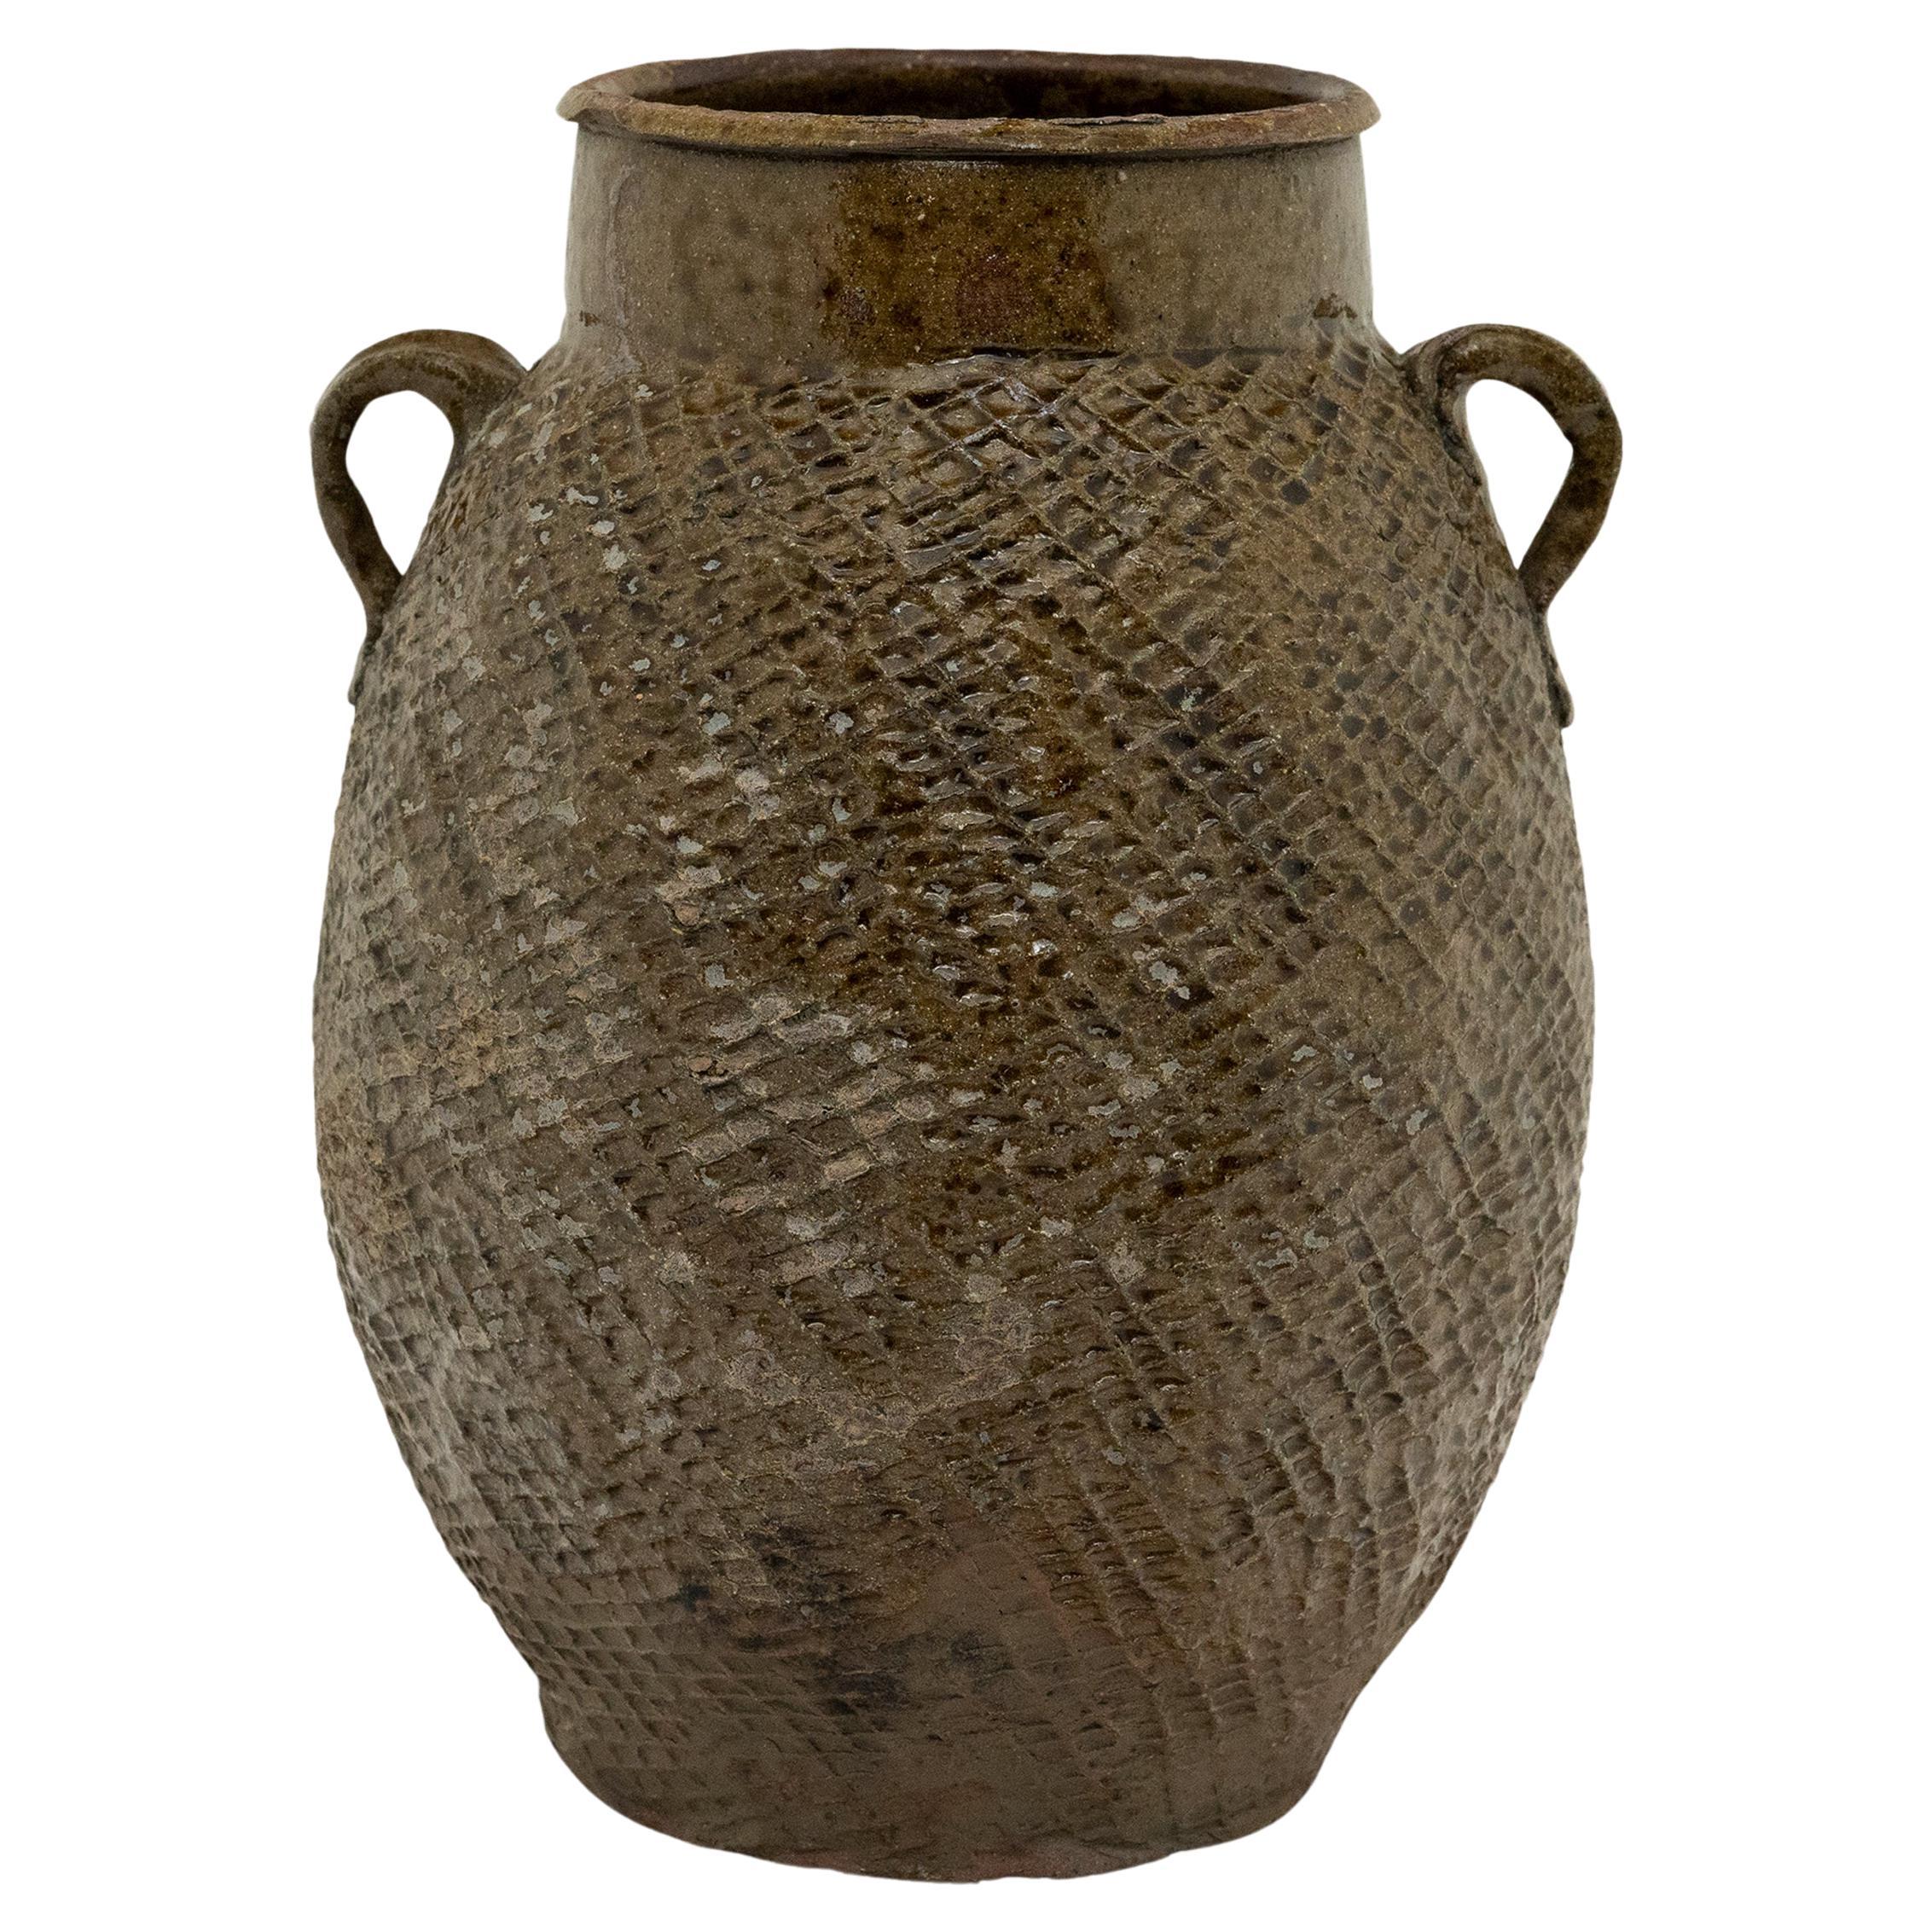 Chinese Yunnan Lobed Pot, c. 1800